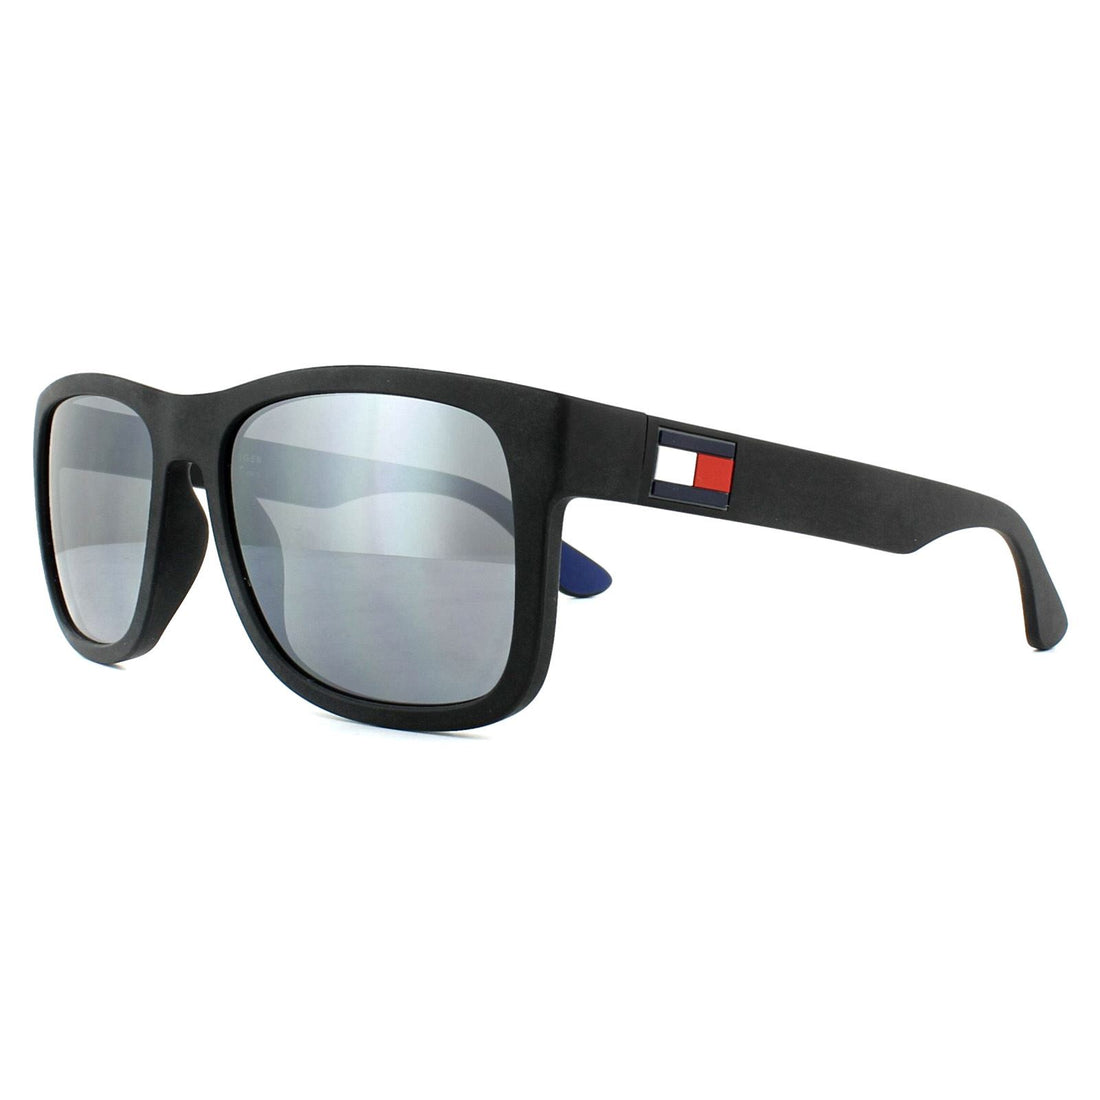 Tommy Hilfiger Sunglasses TH 1556/S D51 T4 Black Grey Mirror 52mm